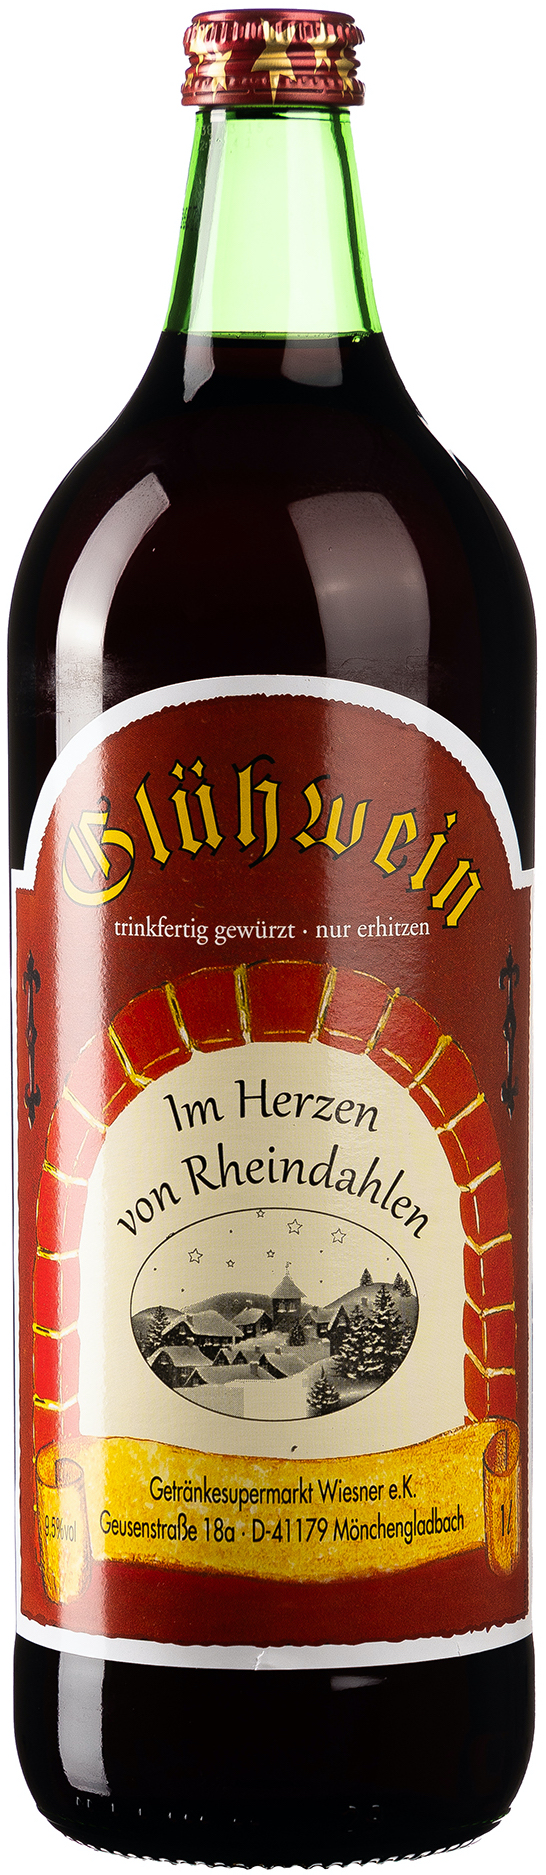 Glühwein Im Herzen von Rheindahlen 9,5% vol. 1,0L